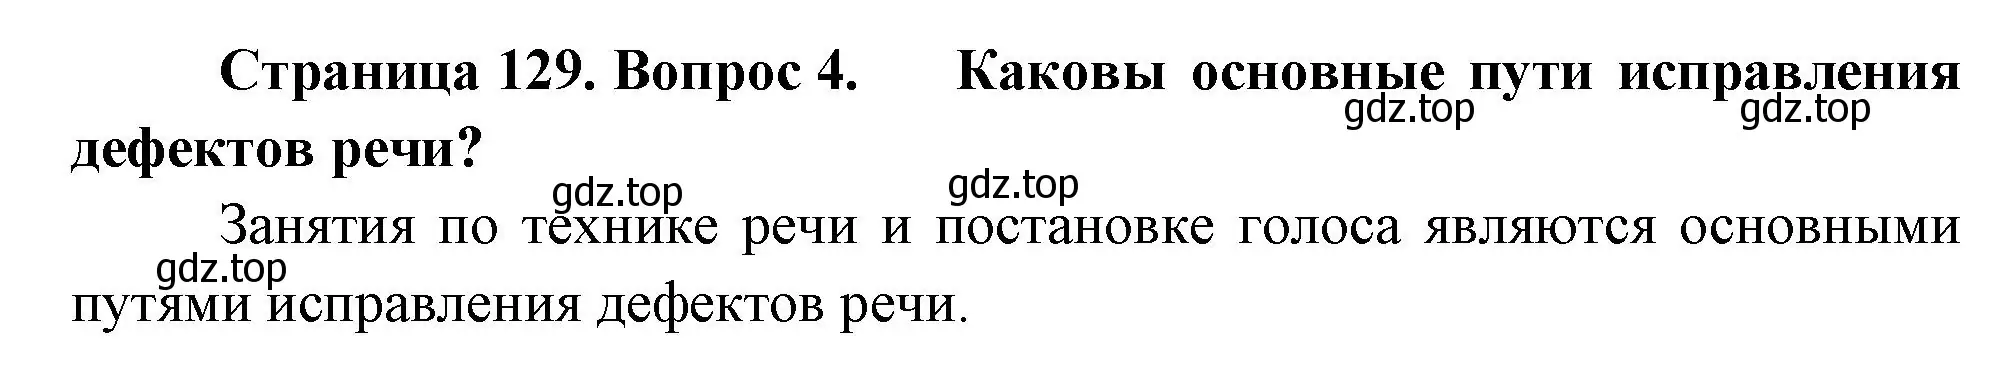 Решение номер 4 (страница 129) гдз по биологии 9 класс Пасечник, Каменский, учебник